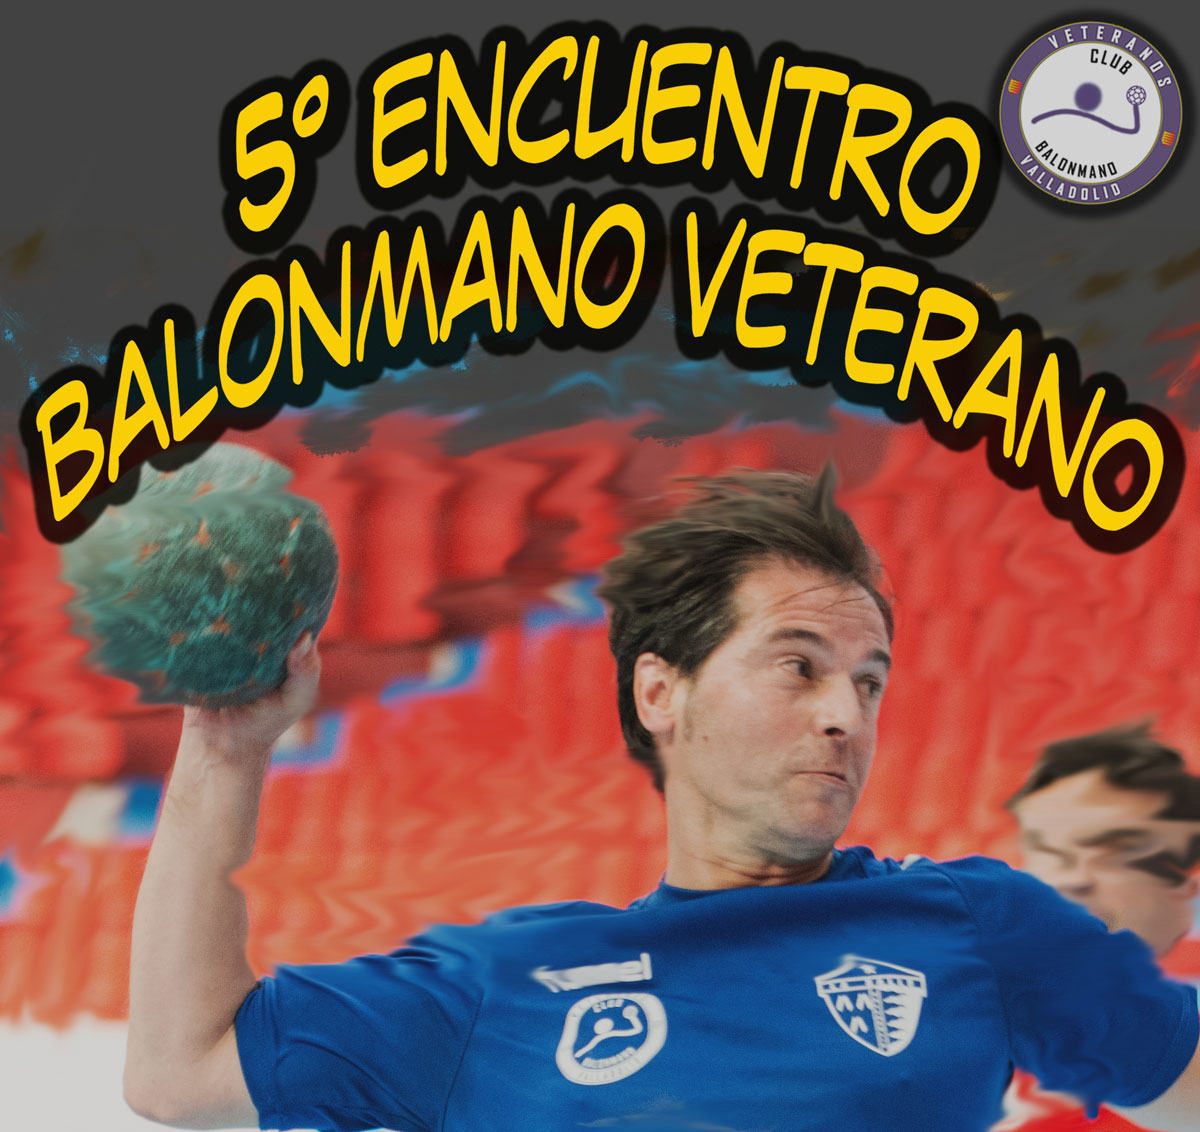 El Recoletas Atlético Valladolid participará en el V Encuentro de Balonmano Veterano que se disputa el 16 de junio en Valladolid